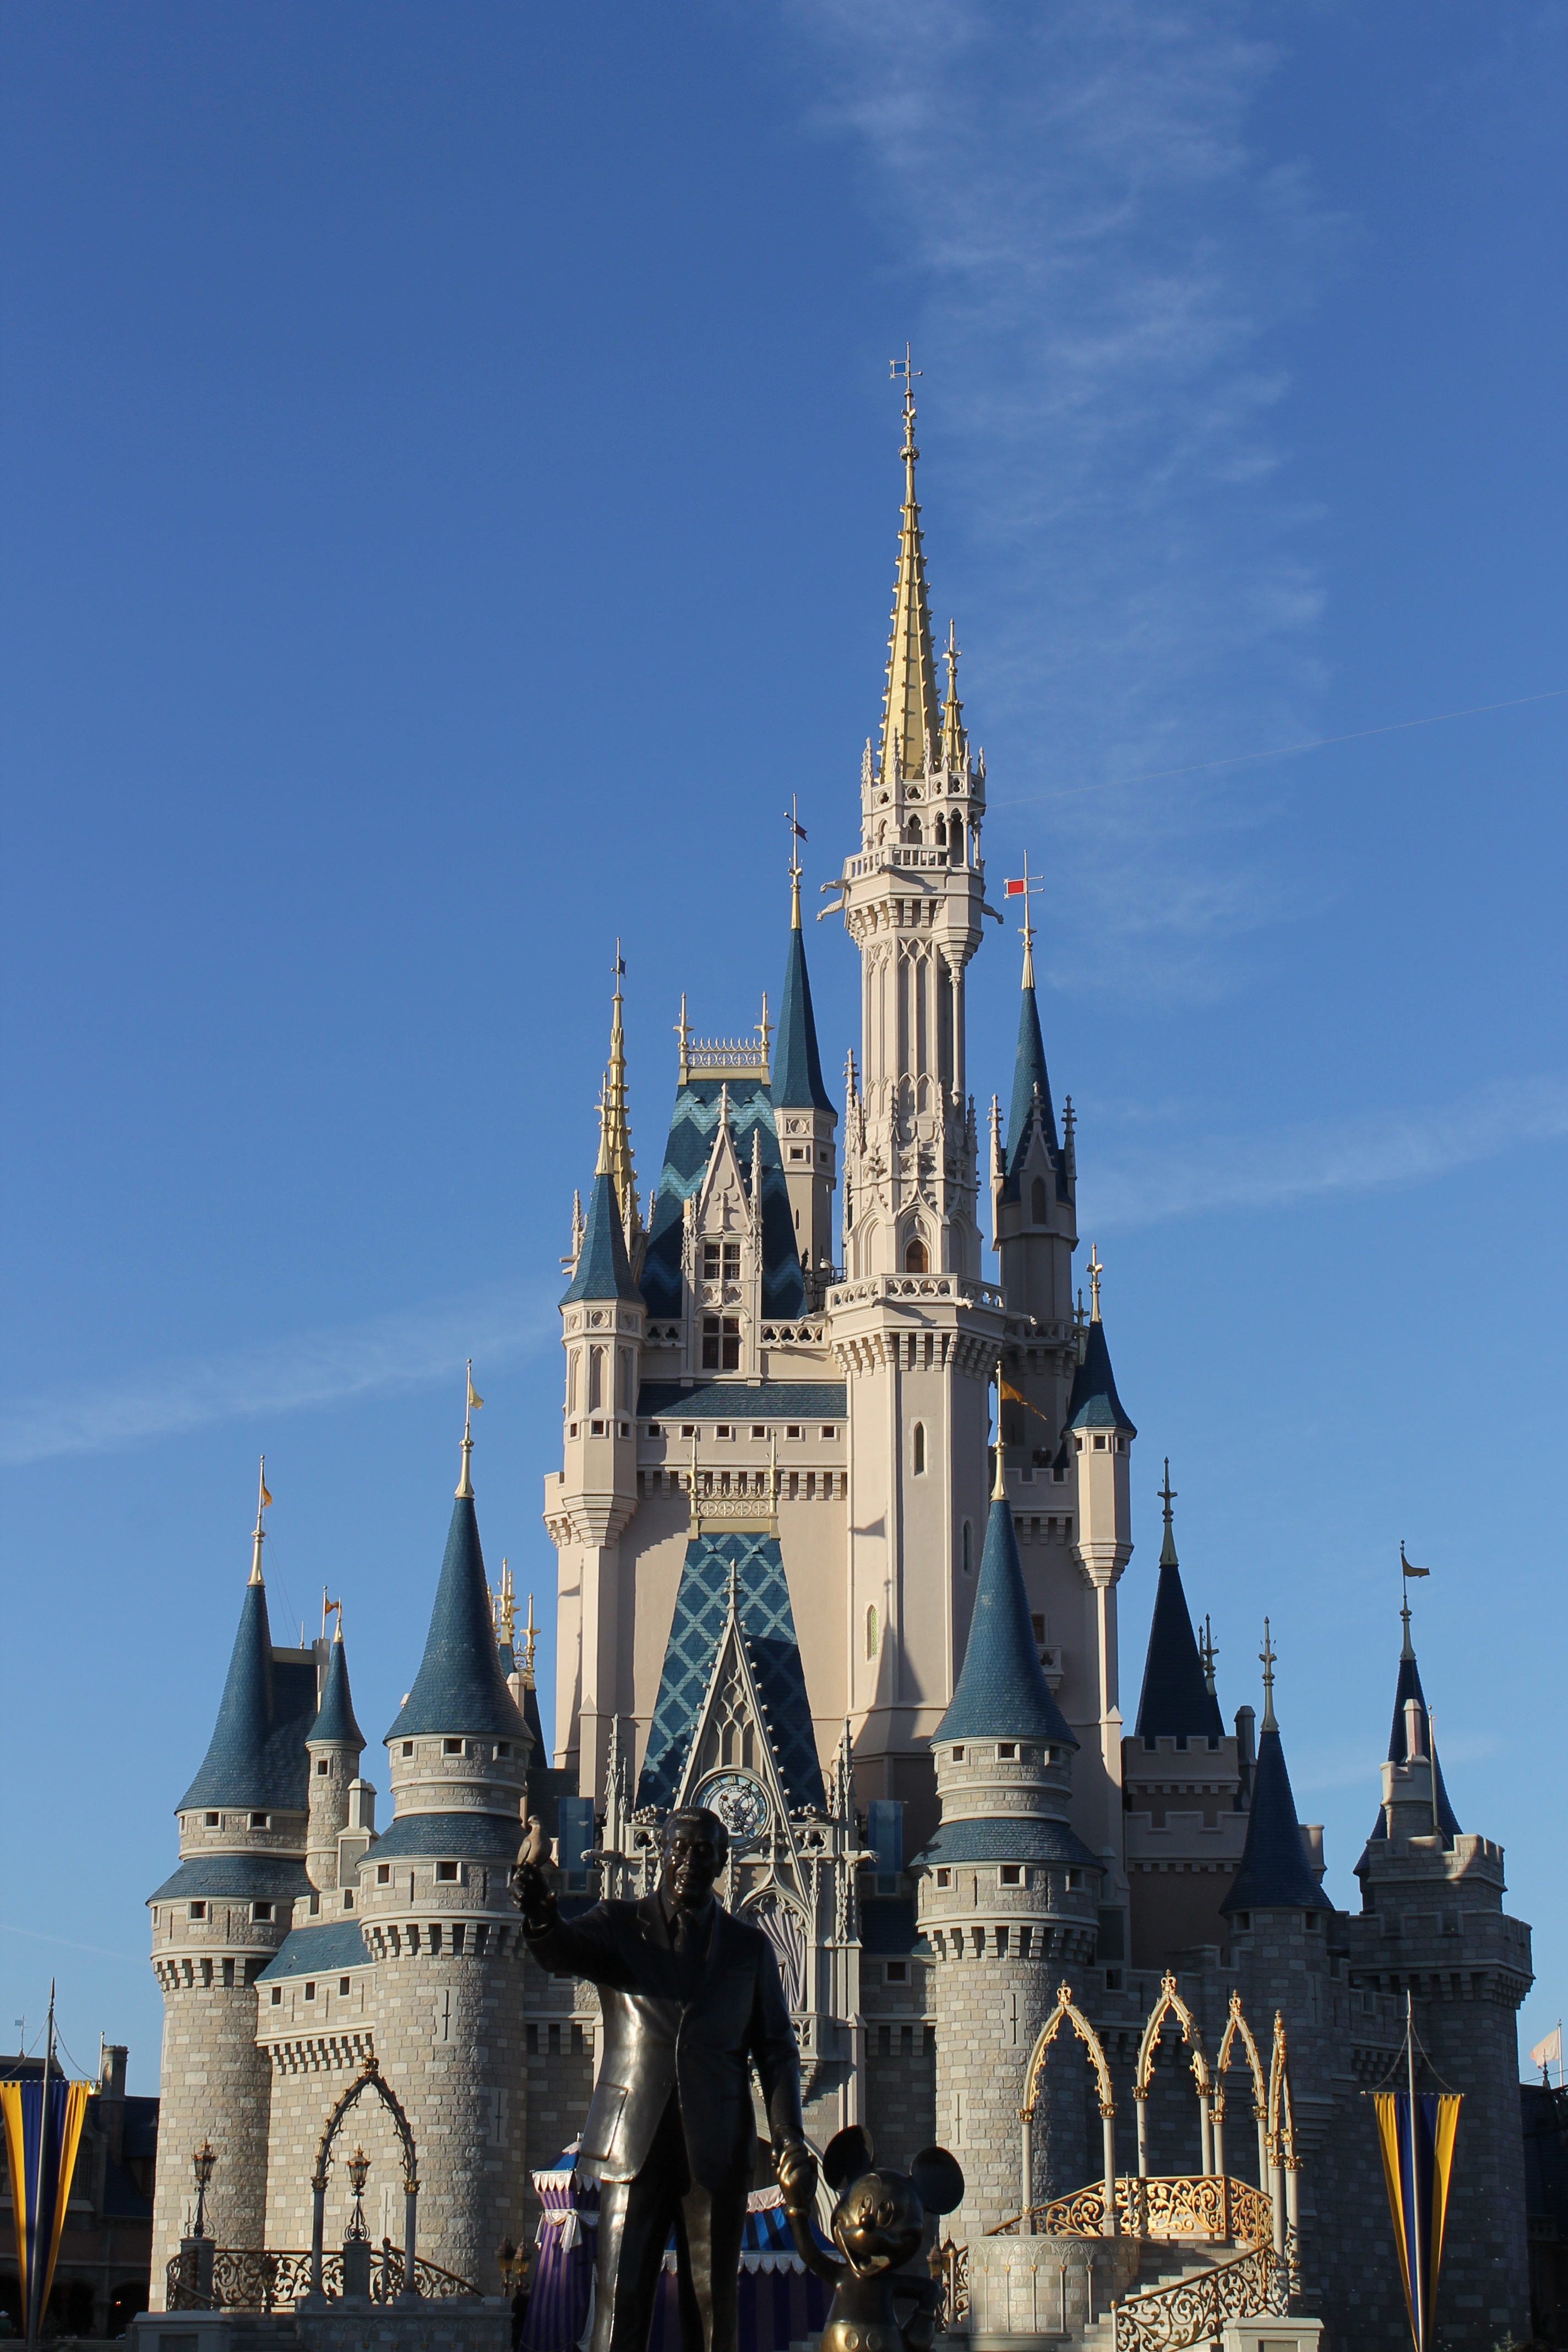 Cinderella's Castle in the Magic Kingdom